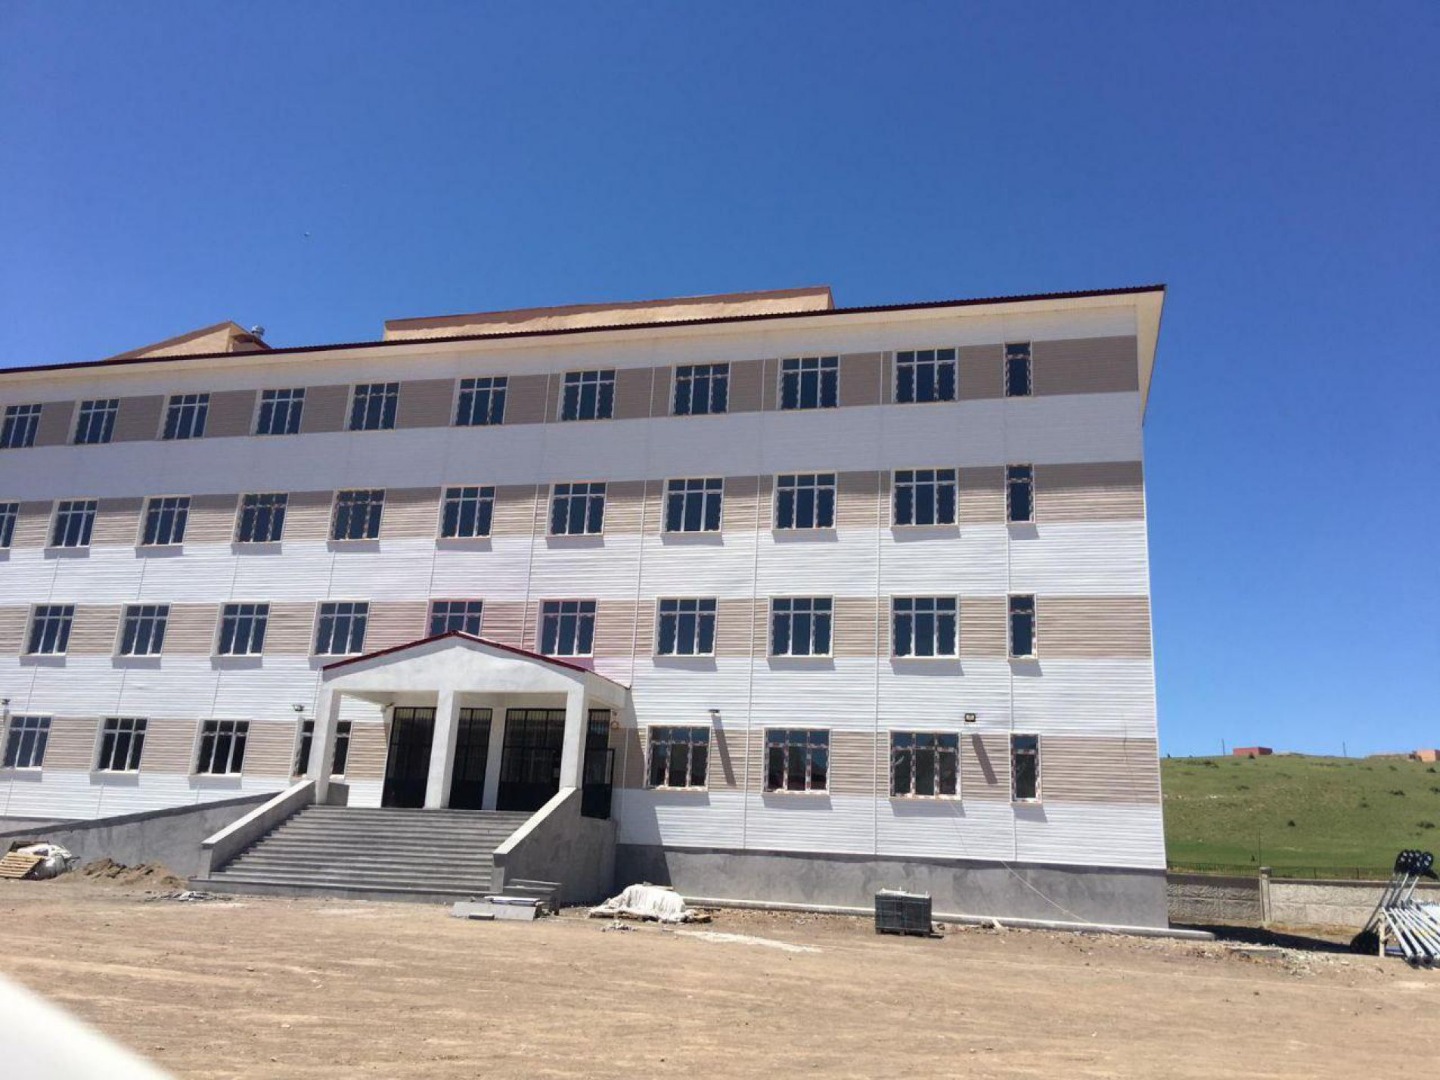 Bitlis Milli Eğitim Müdürlüğü bina inşaatı için ilana çıktı